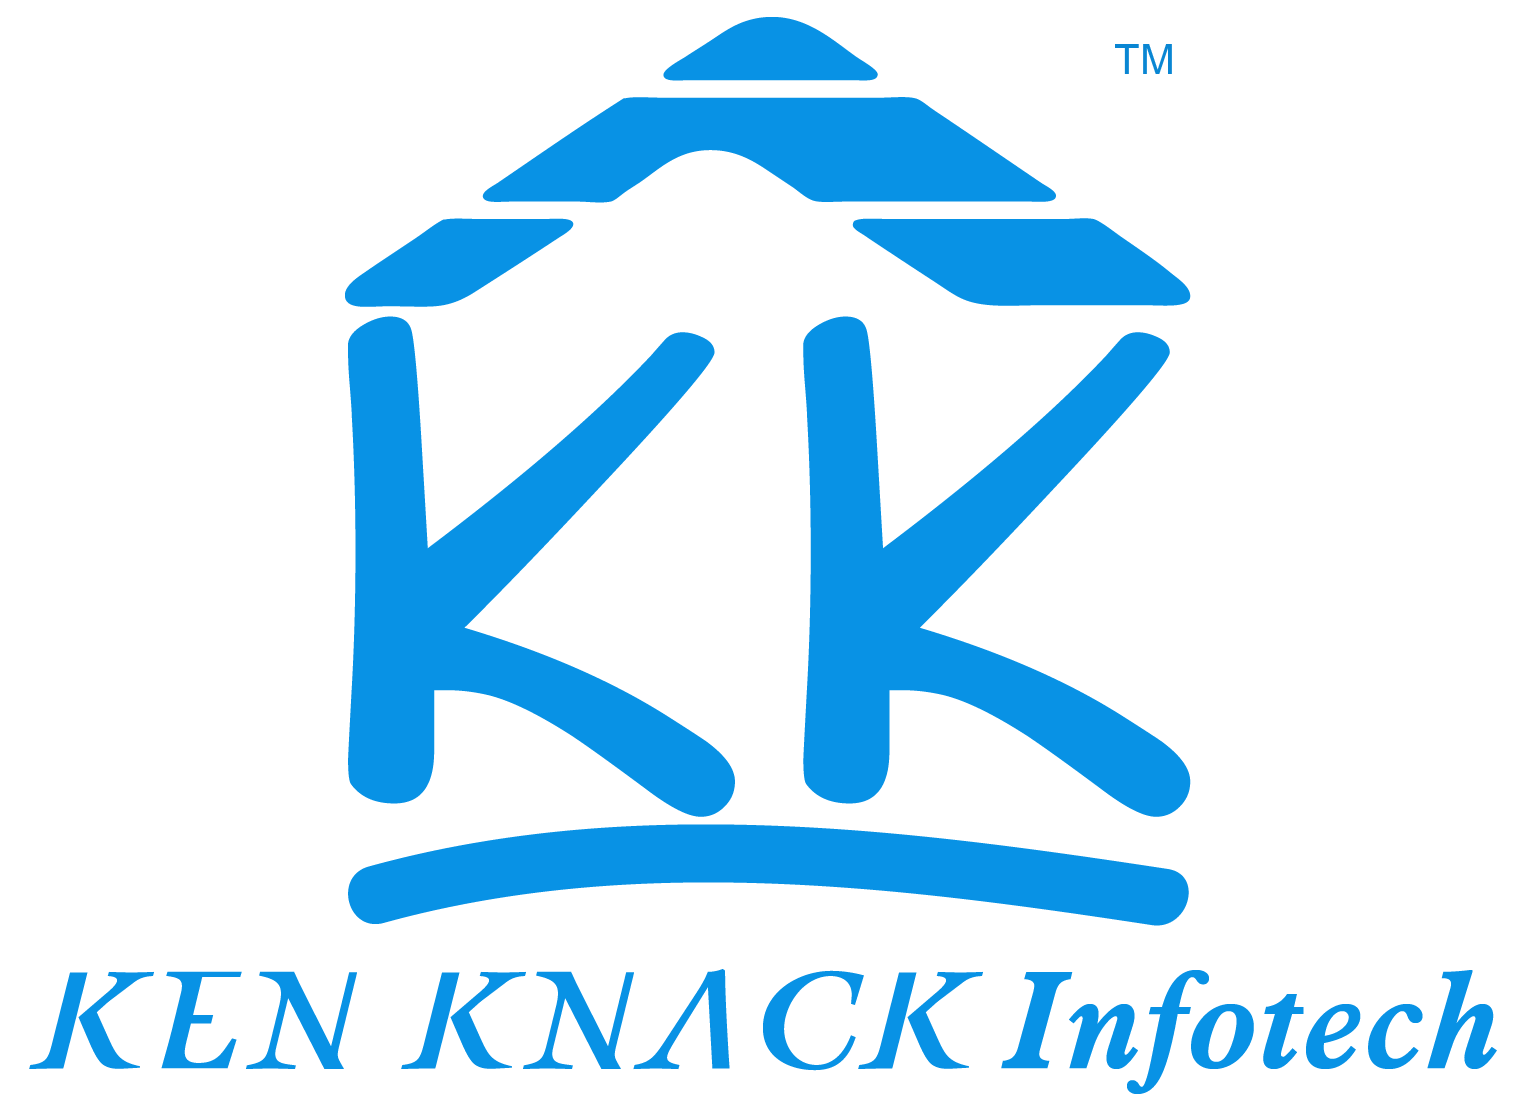 Kk Logo - File:Kk-logo.png - Wikimedia Commons